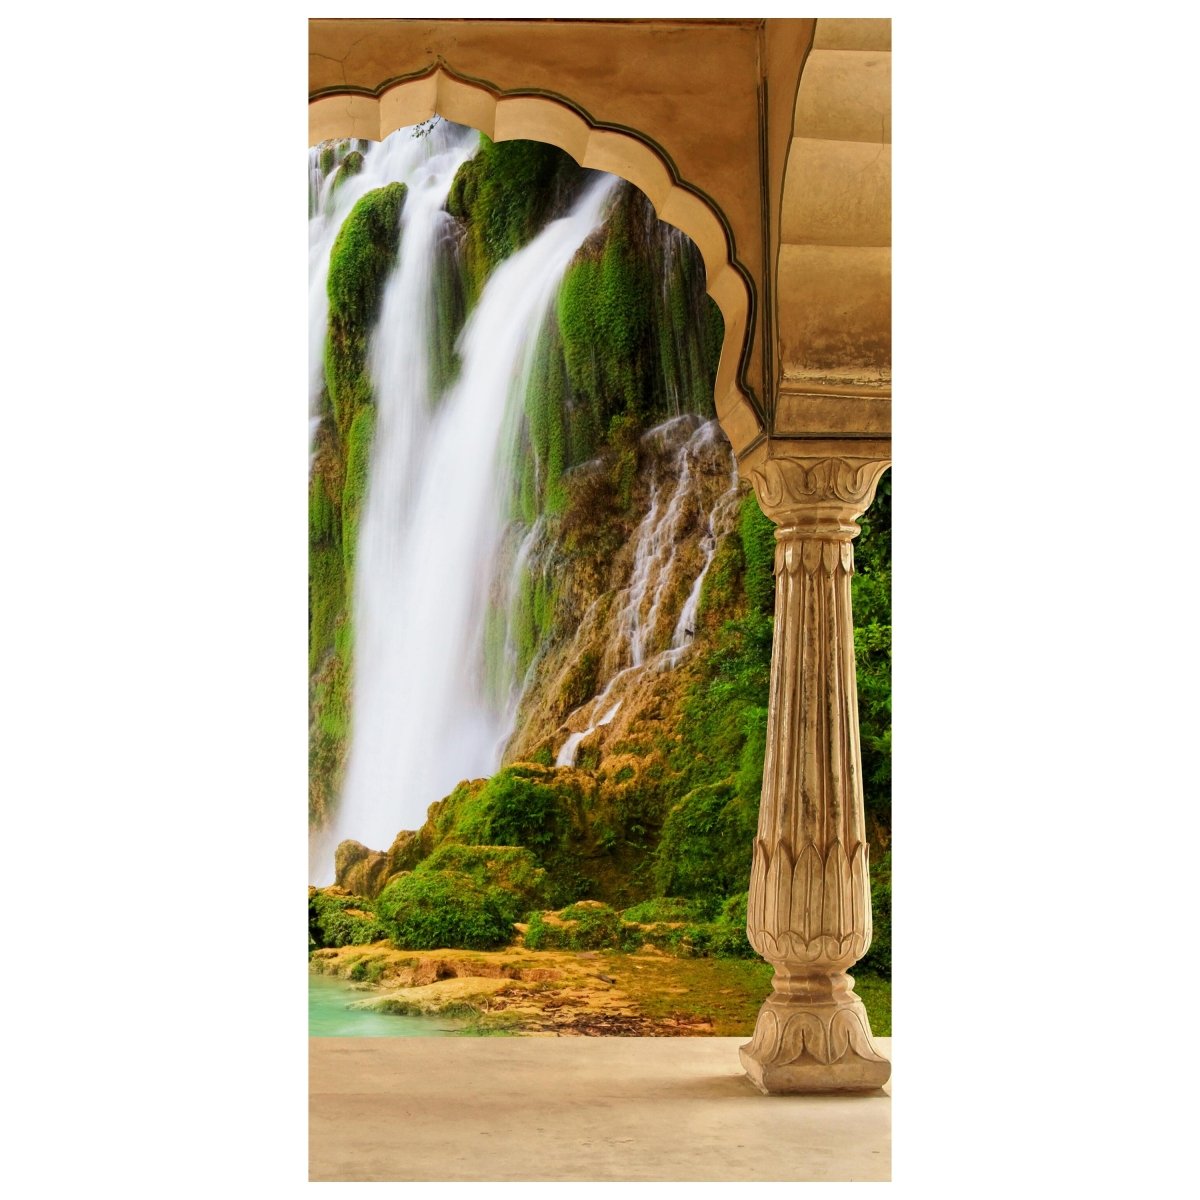 Türtapete Säulen - tropischer Wasserfall M0596 - Bild 2